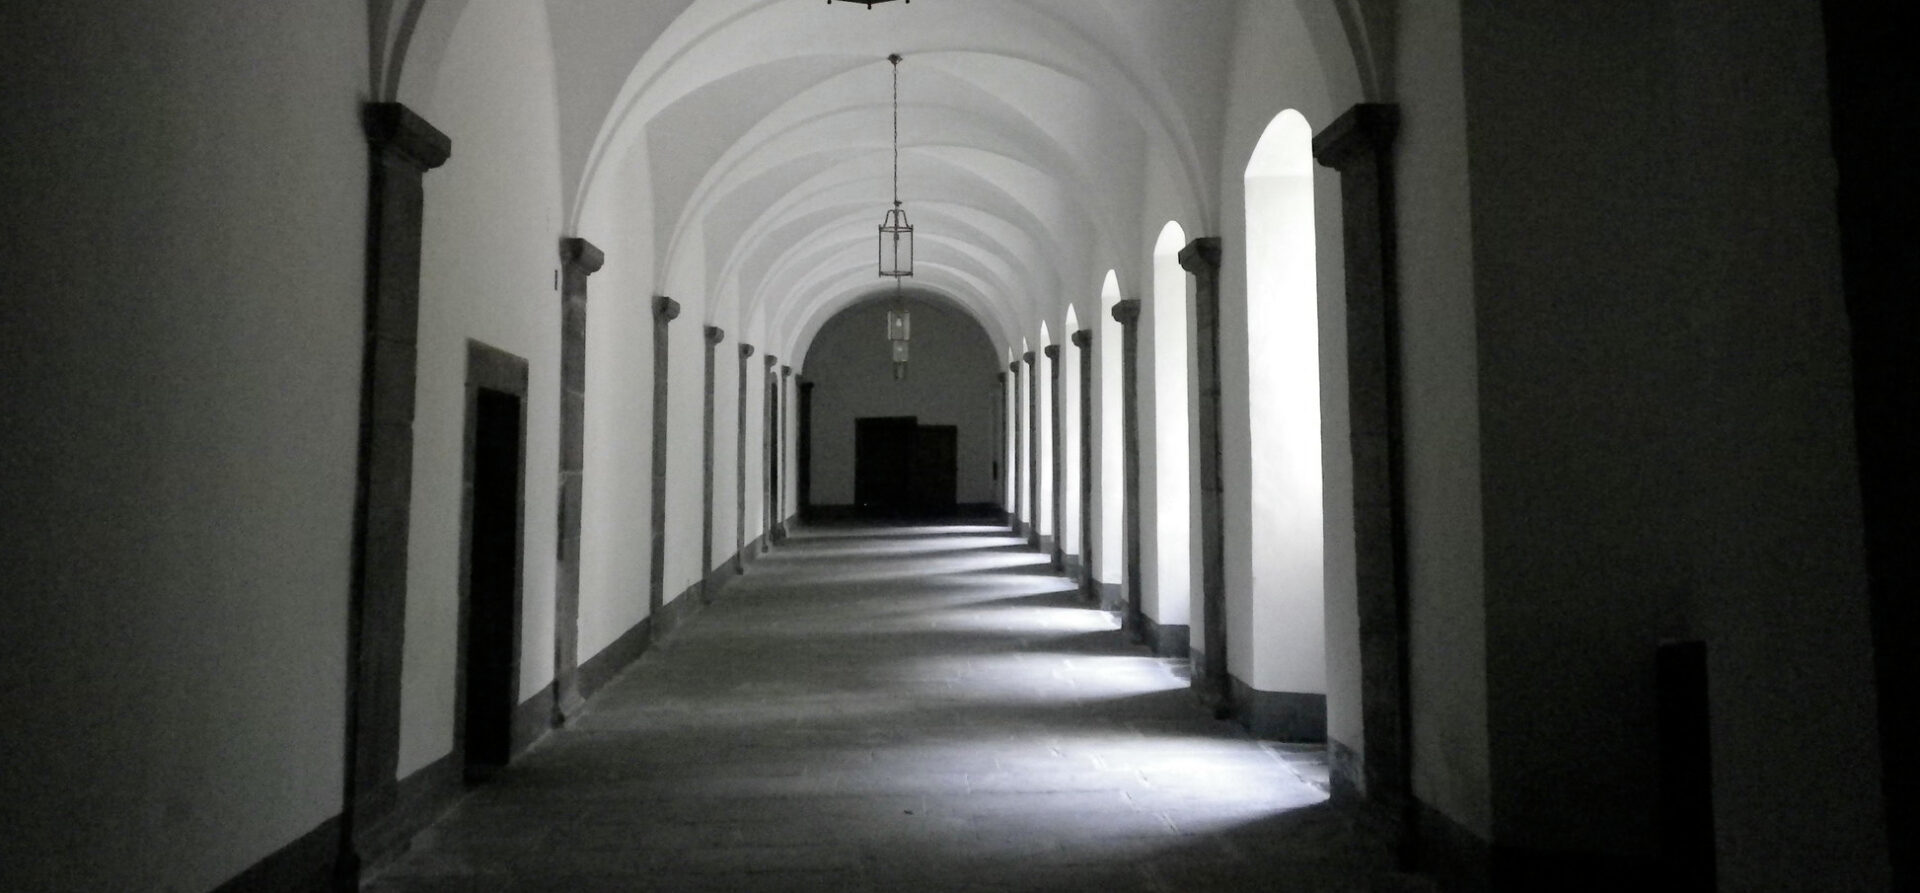 Un couloir de l'Abbaye de St-Maurice (VS), actuellement dans la tourmente | © Sam Nabi/Flickr/CC BY-SA 2.0